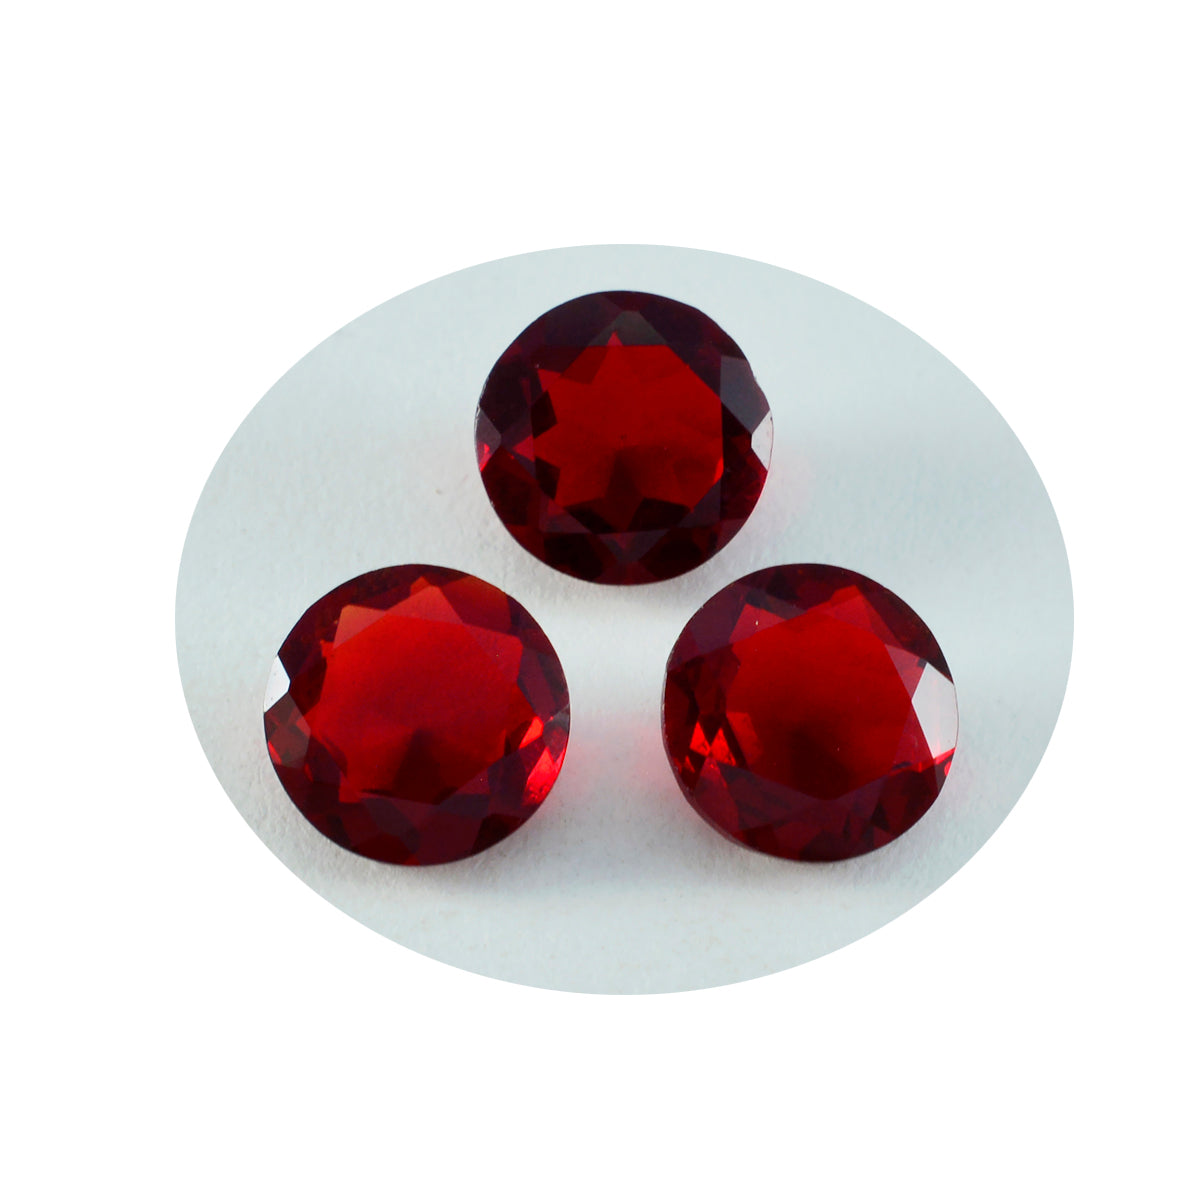 riyogems 1 pieza de rubí rojo cz facetado 13x13 mm forma redonda piedra preciosa de buena calidad